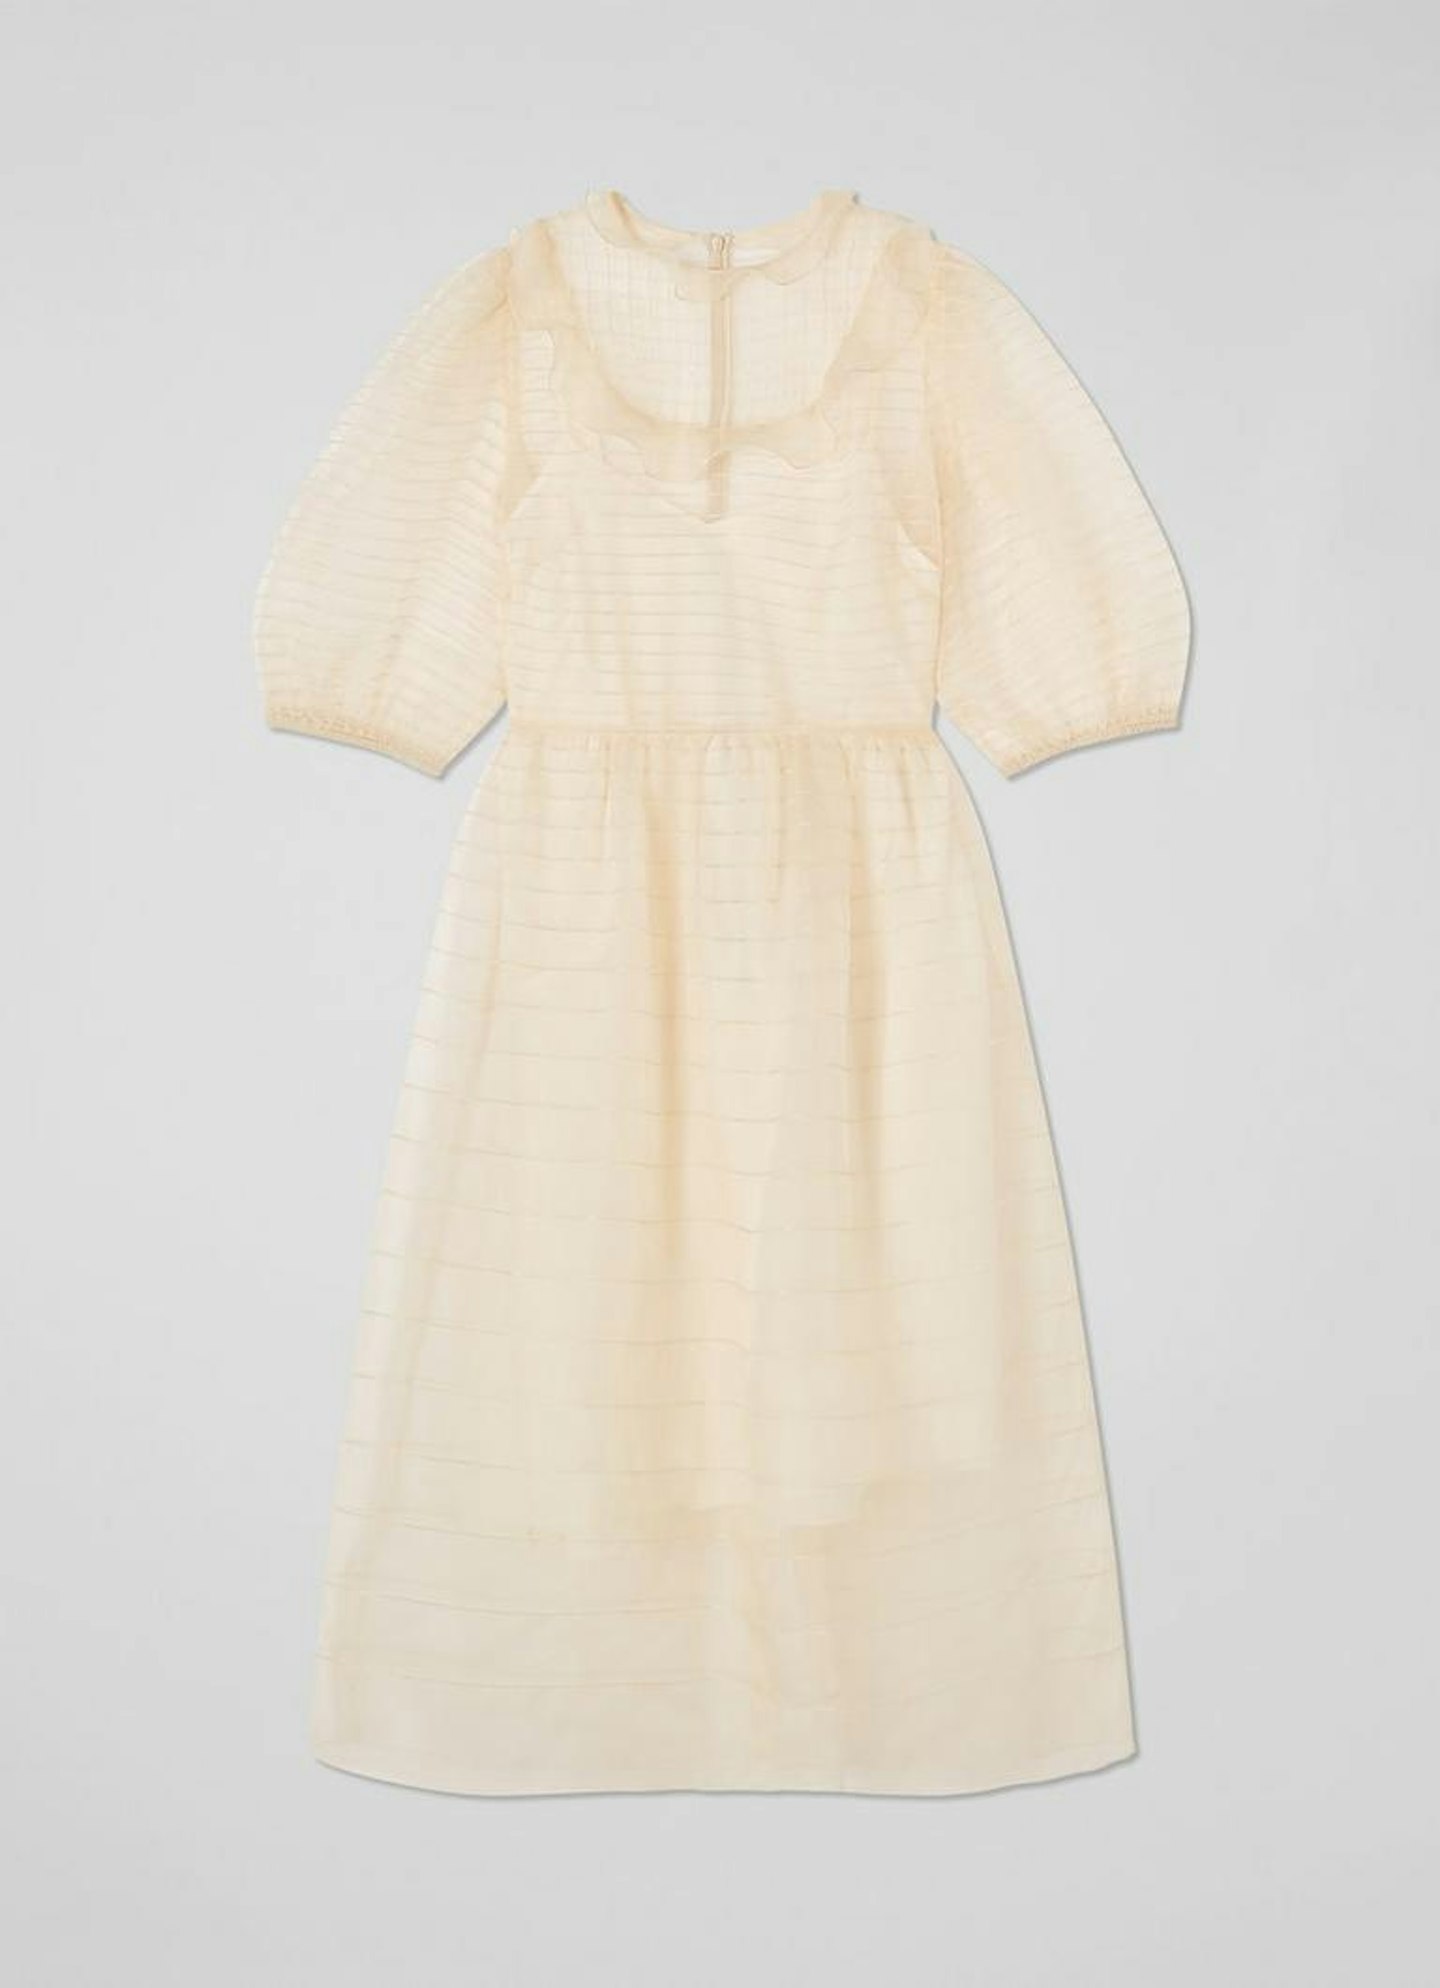 LK Bennett, Maddie Cream Silk Organza Dress